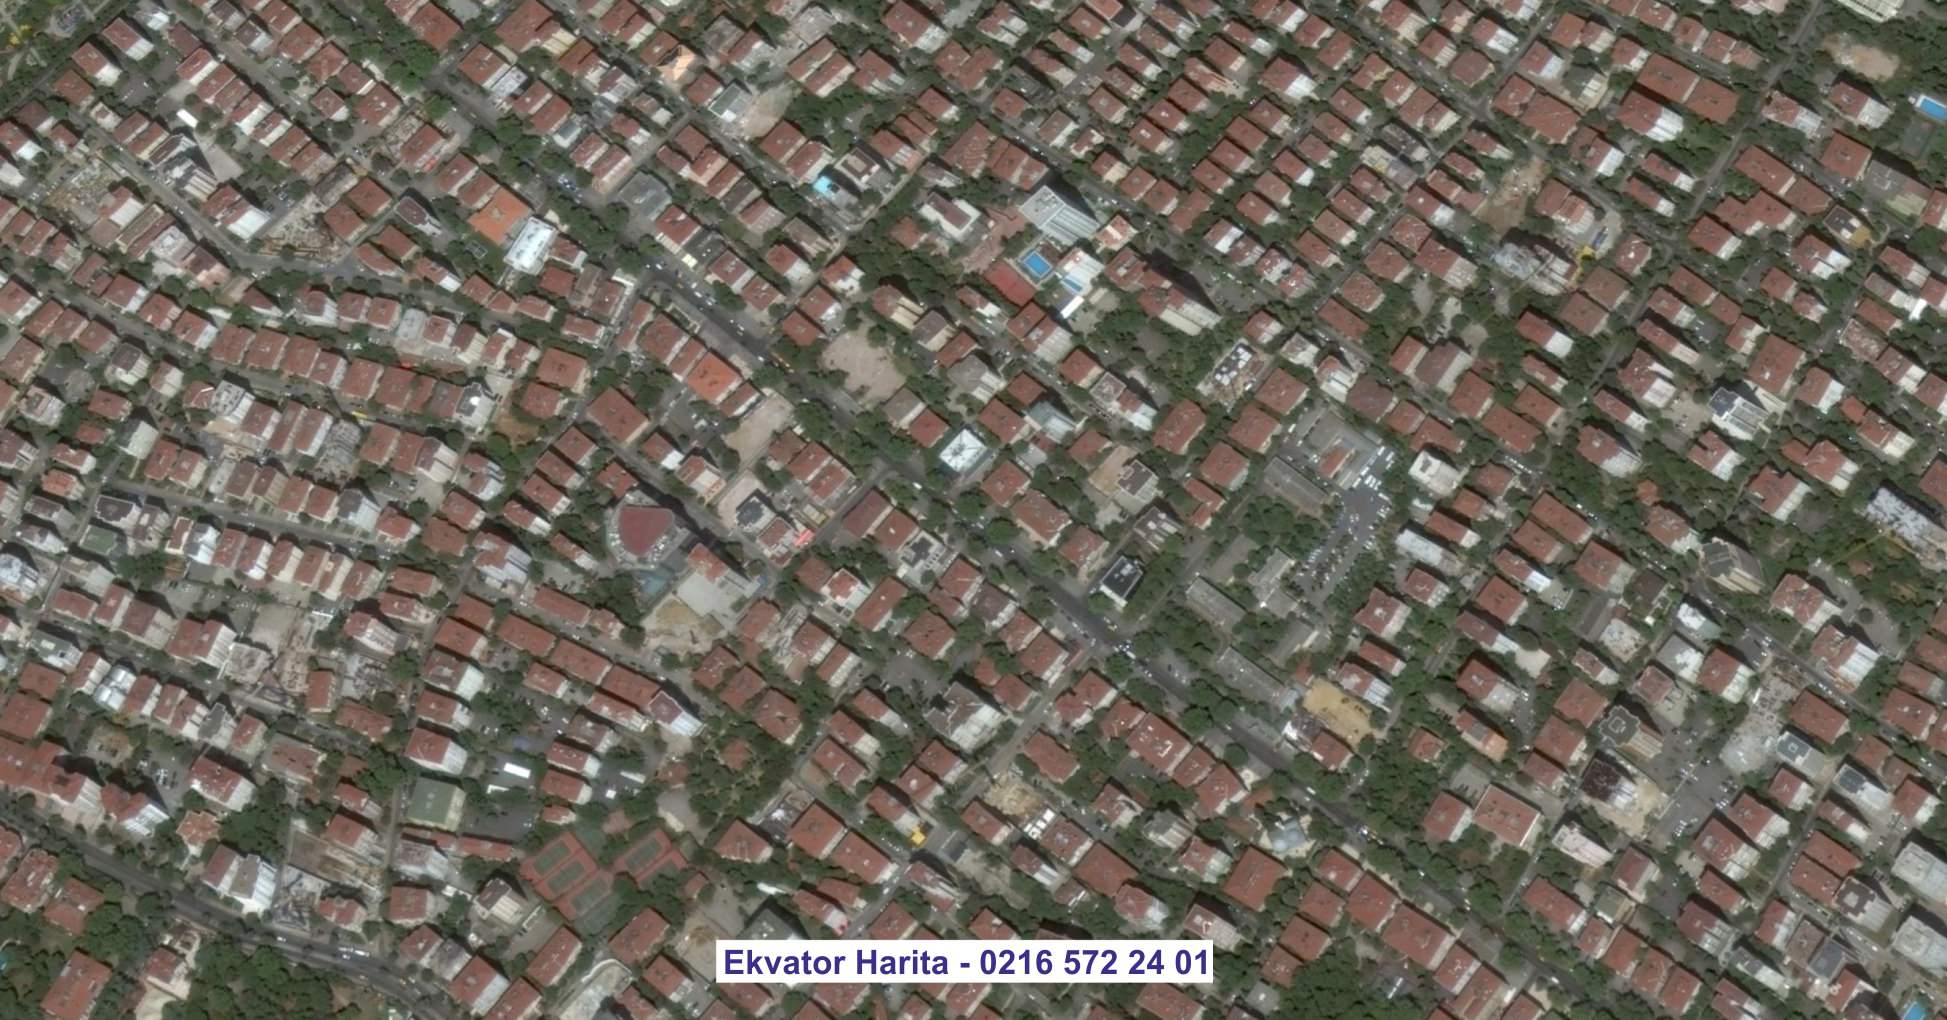 Sincar Uydu Görüntüsü Örnek Fotoğrafı